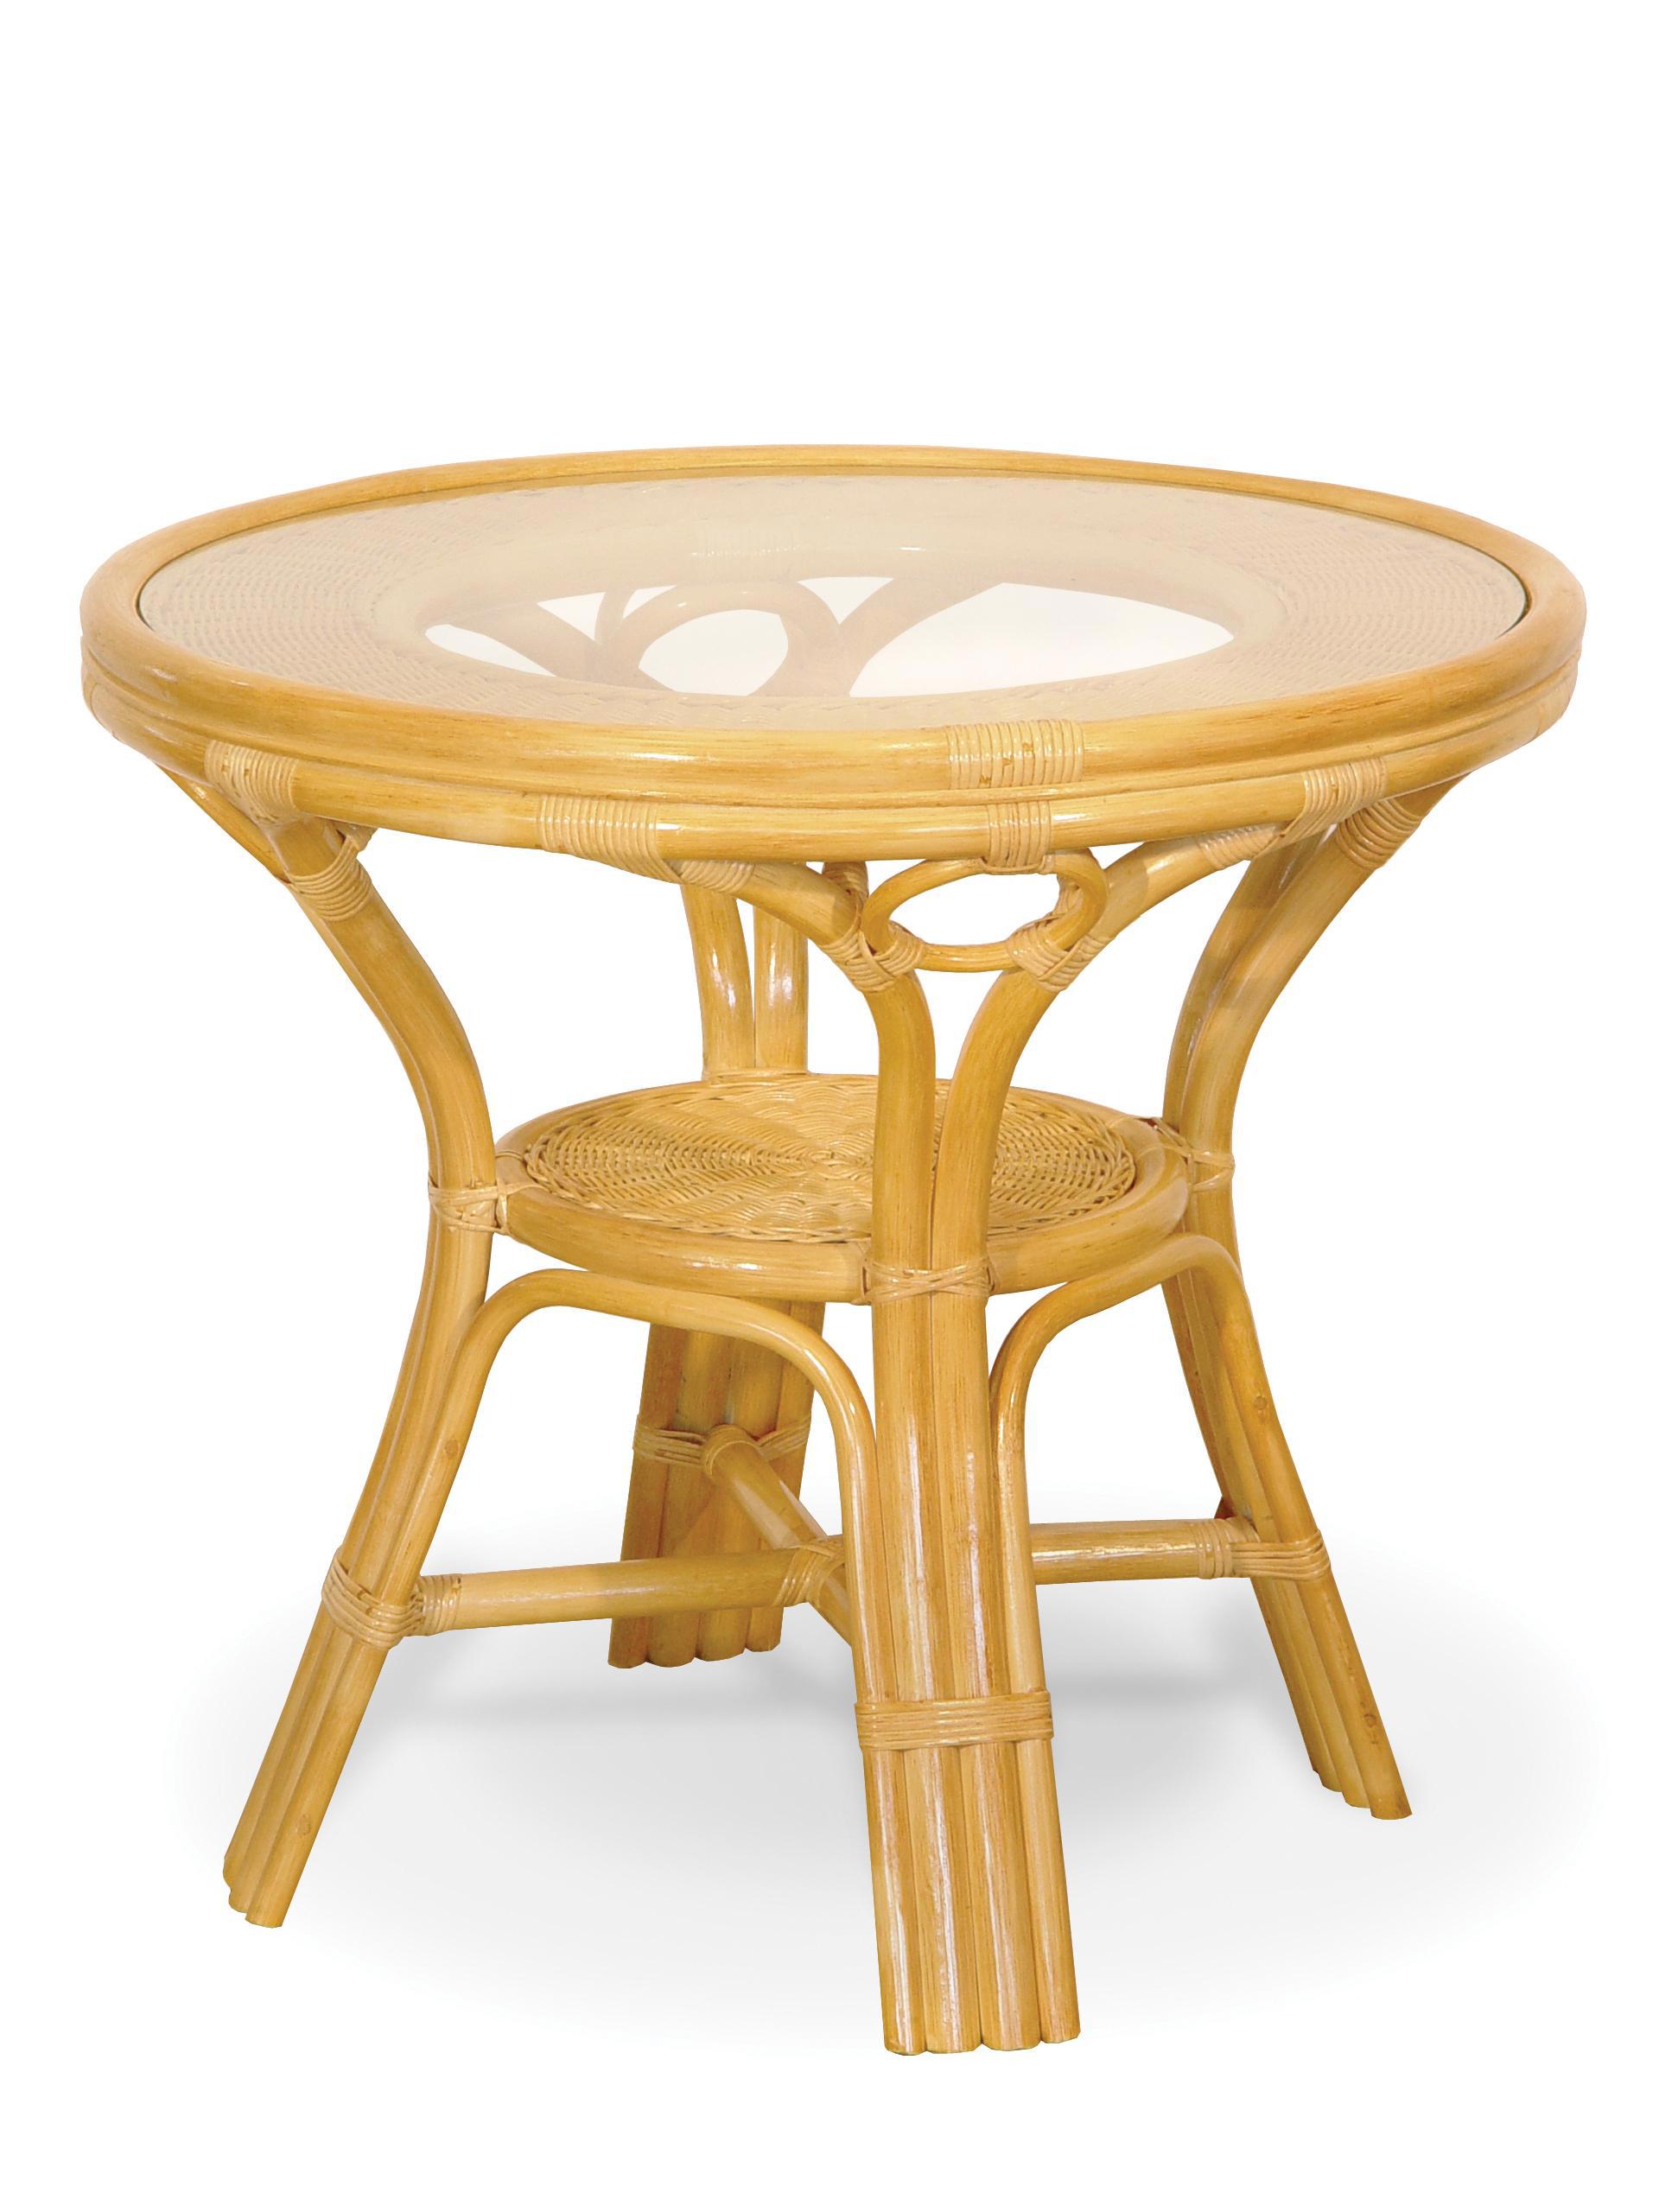 92721155 Стол обеденный со стеклом 02/09А ротанг цвет мёд Calamus Rotan STLM-0540664 VINOTTI